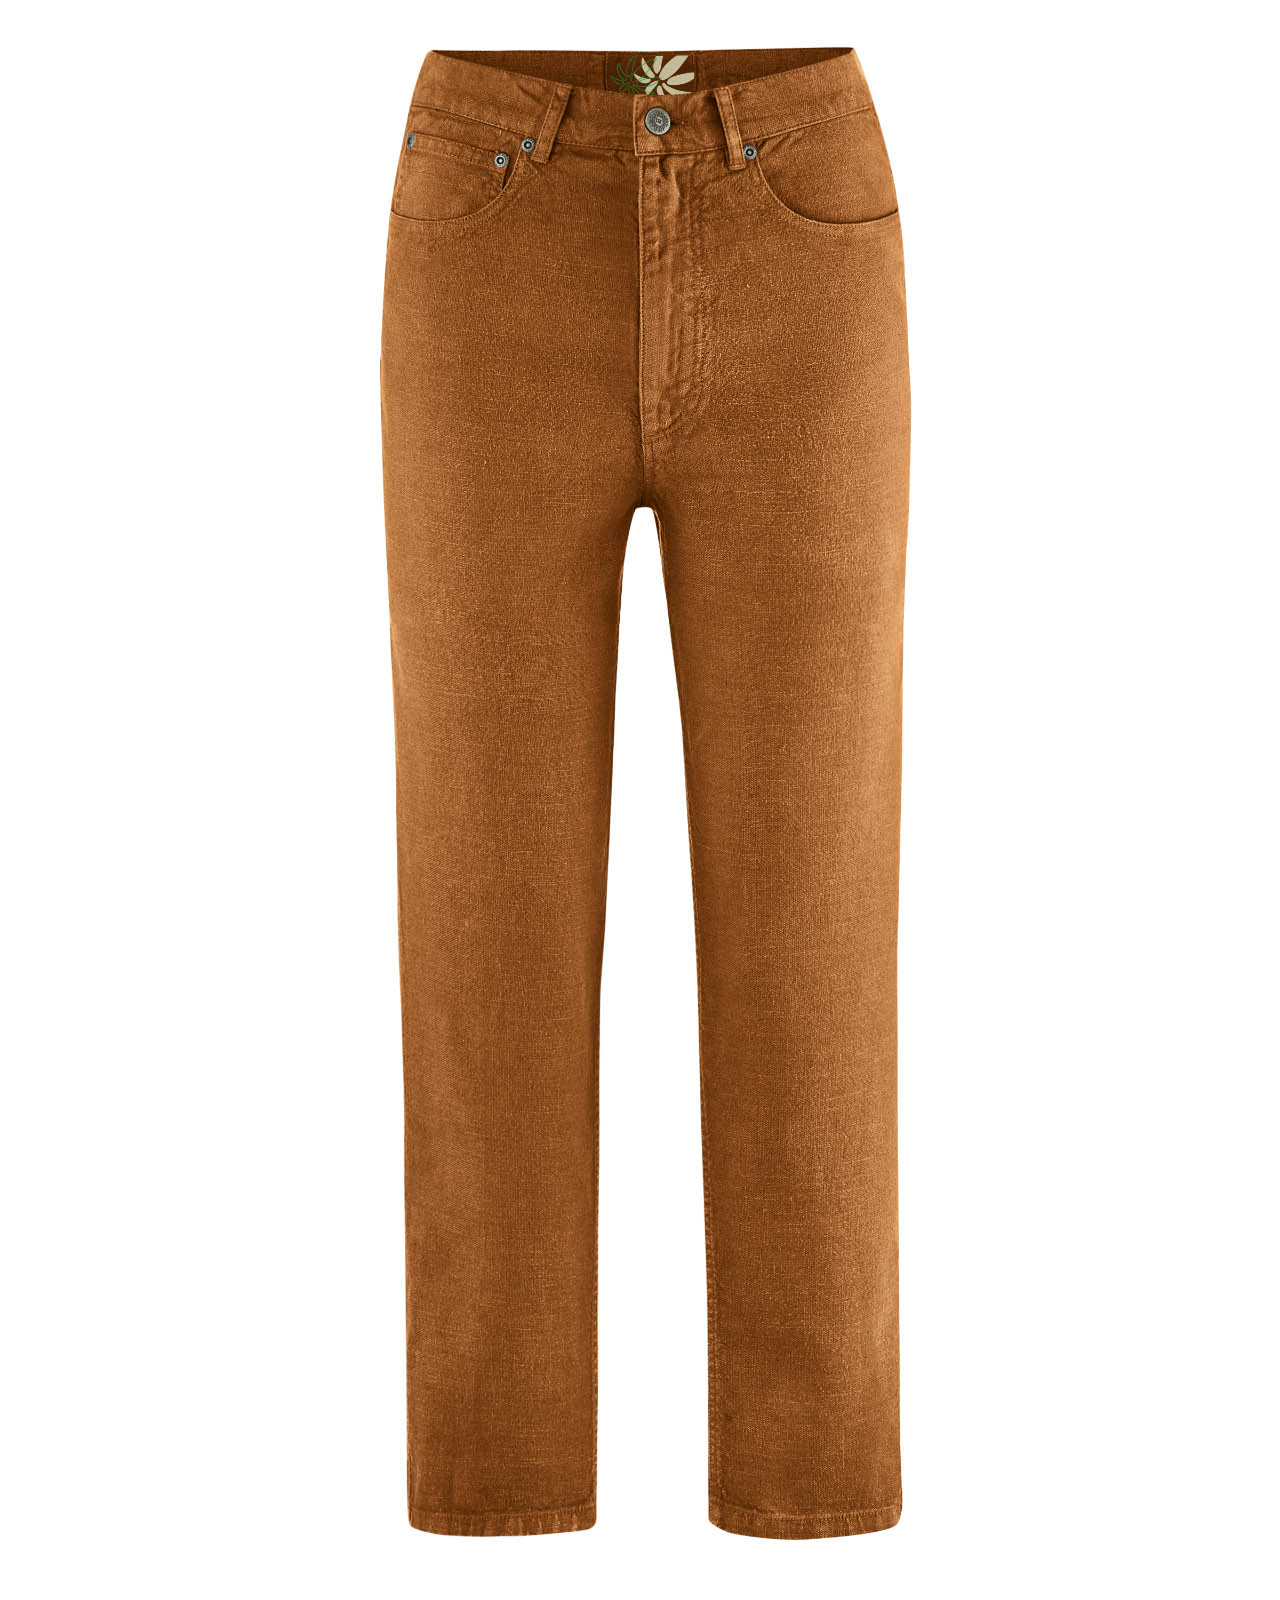 pantalon jean femme DH536_almond